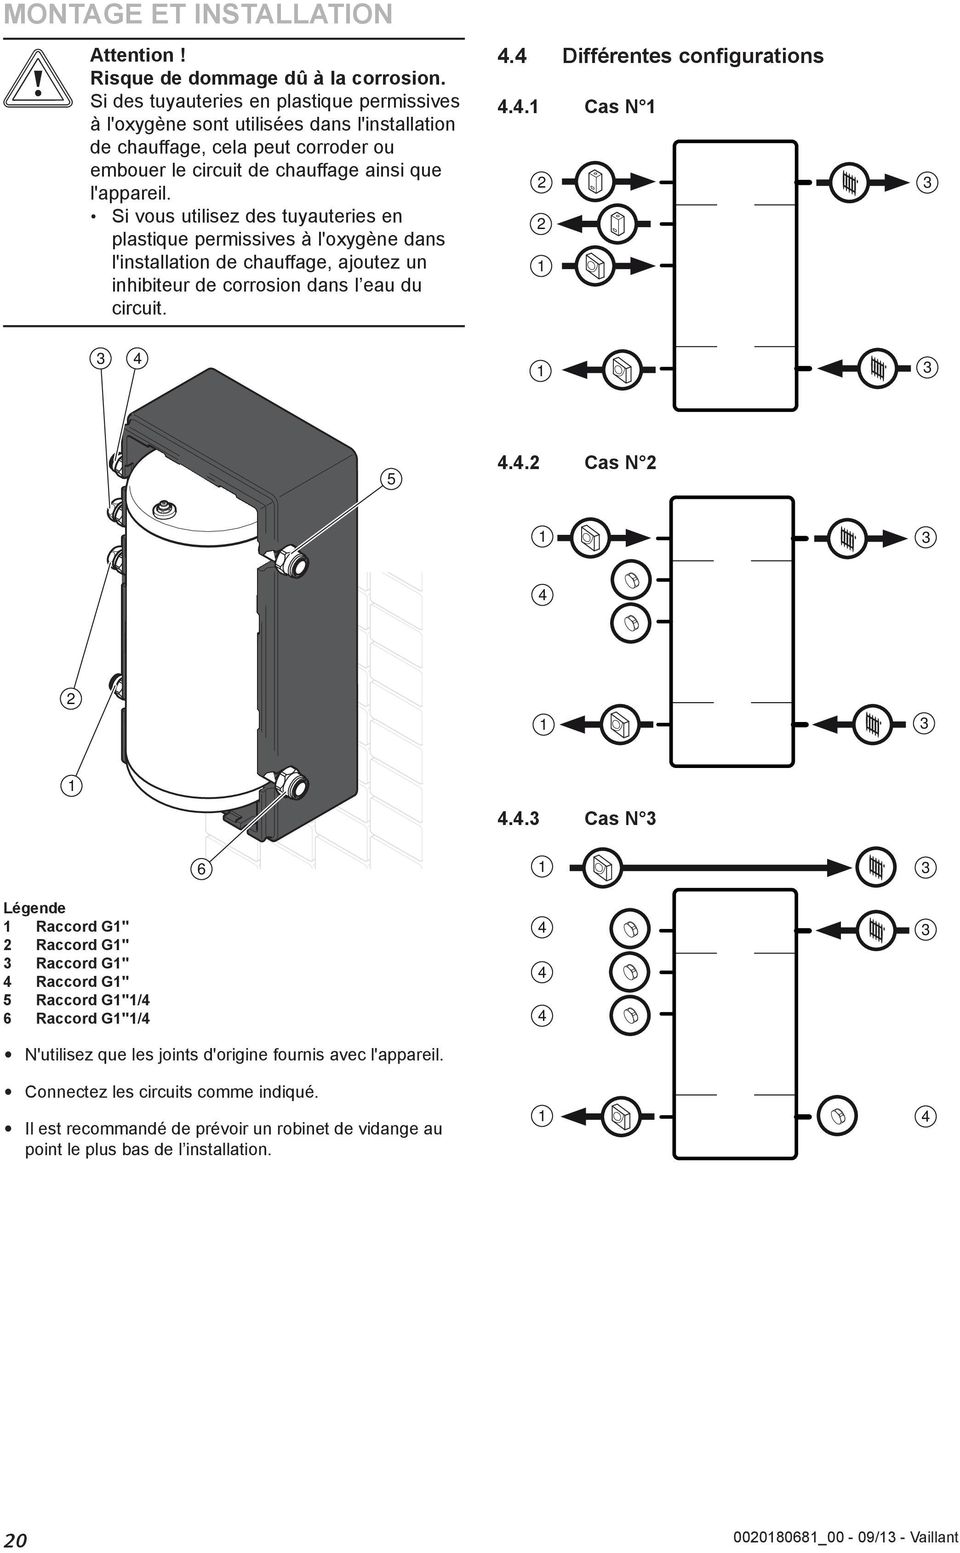 Si vous utilisez des tuyauteries en plastique permissives à l'oxygène dans l'installation de chauffage, ajoutez un inhibiteur de corrosion dans l eau du circuit.. Différentes configurations.